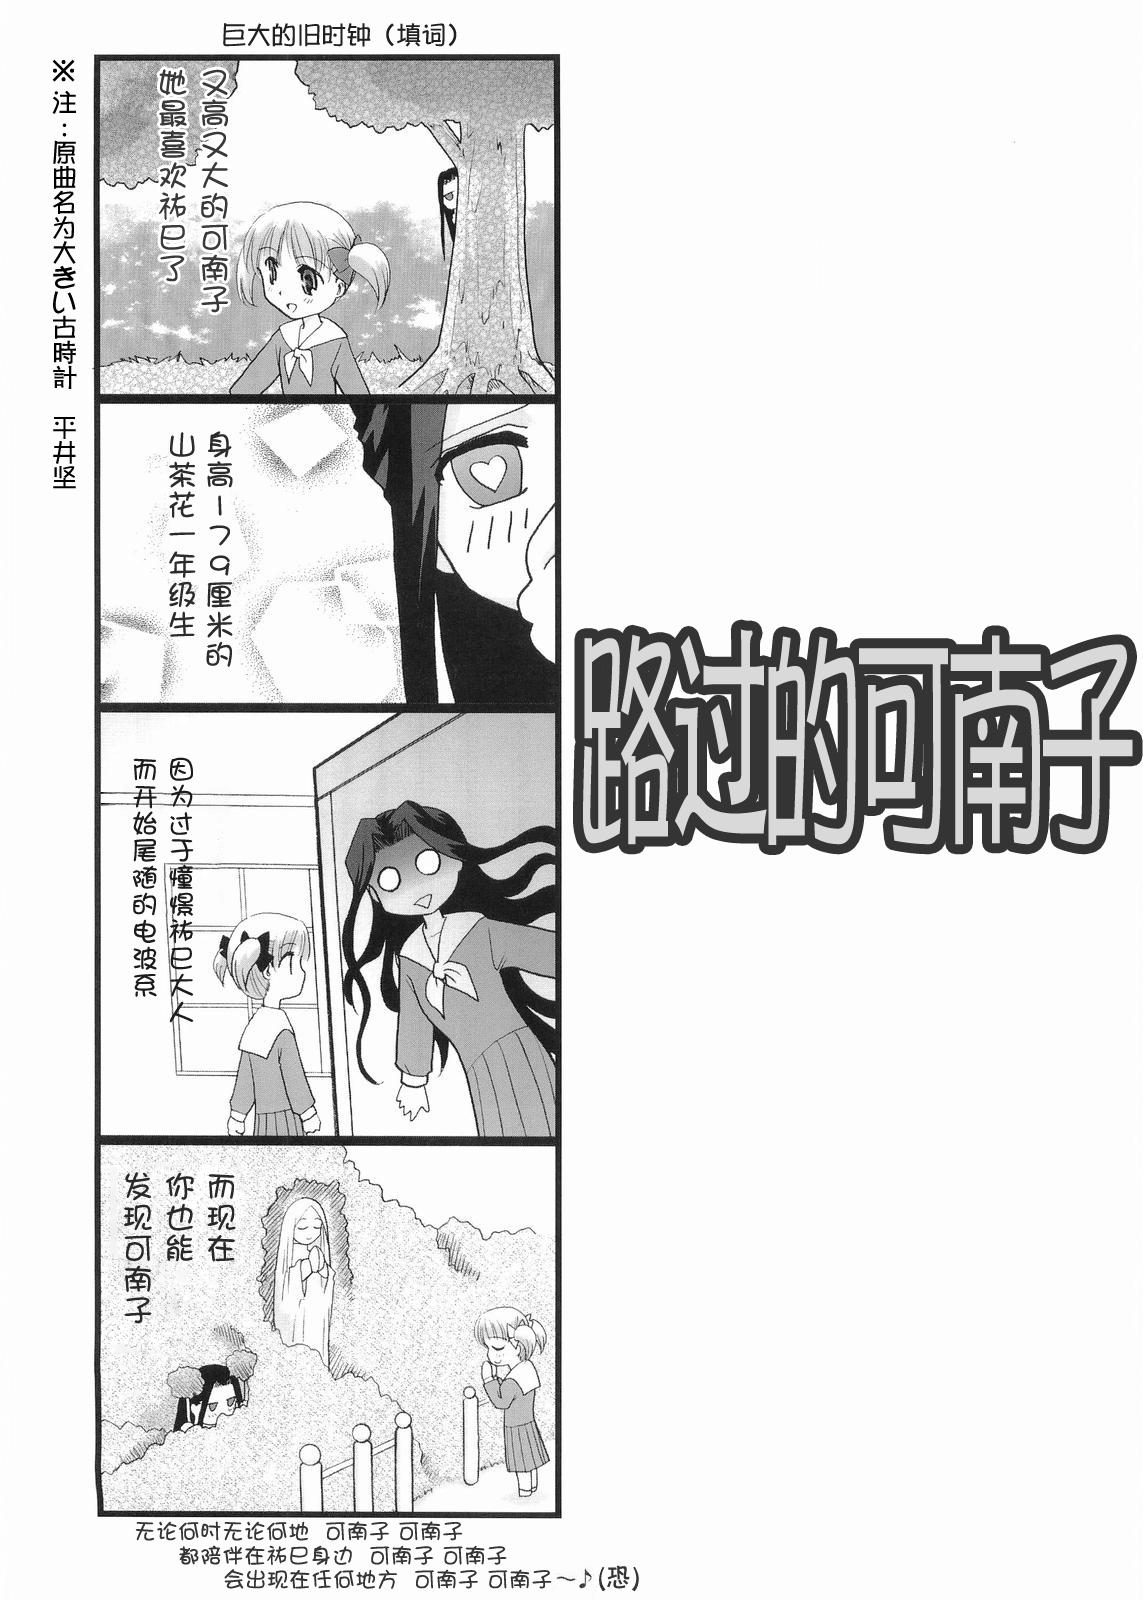 Shecock Hosokawa Kanako ga Miteru 4 Ibara no Kanako - Maria sama ga miteru Gapes Gaping Asshole - Page 4